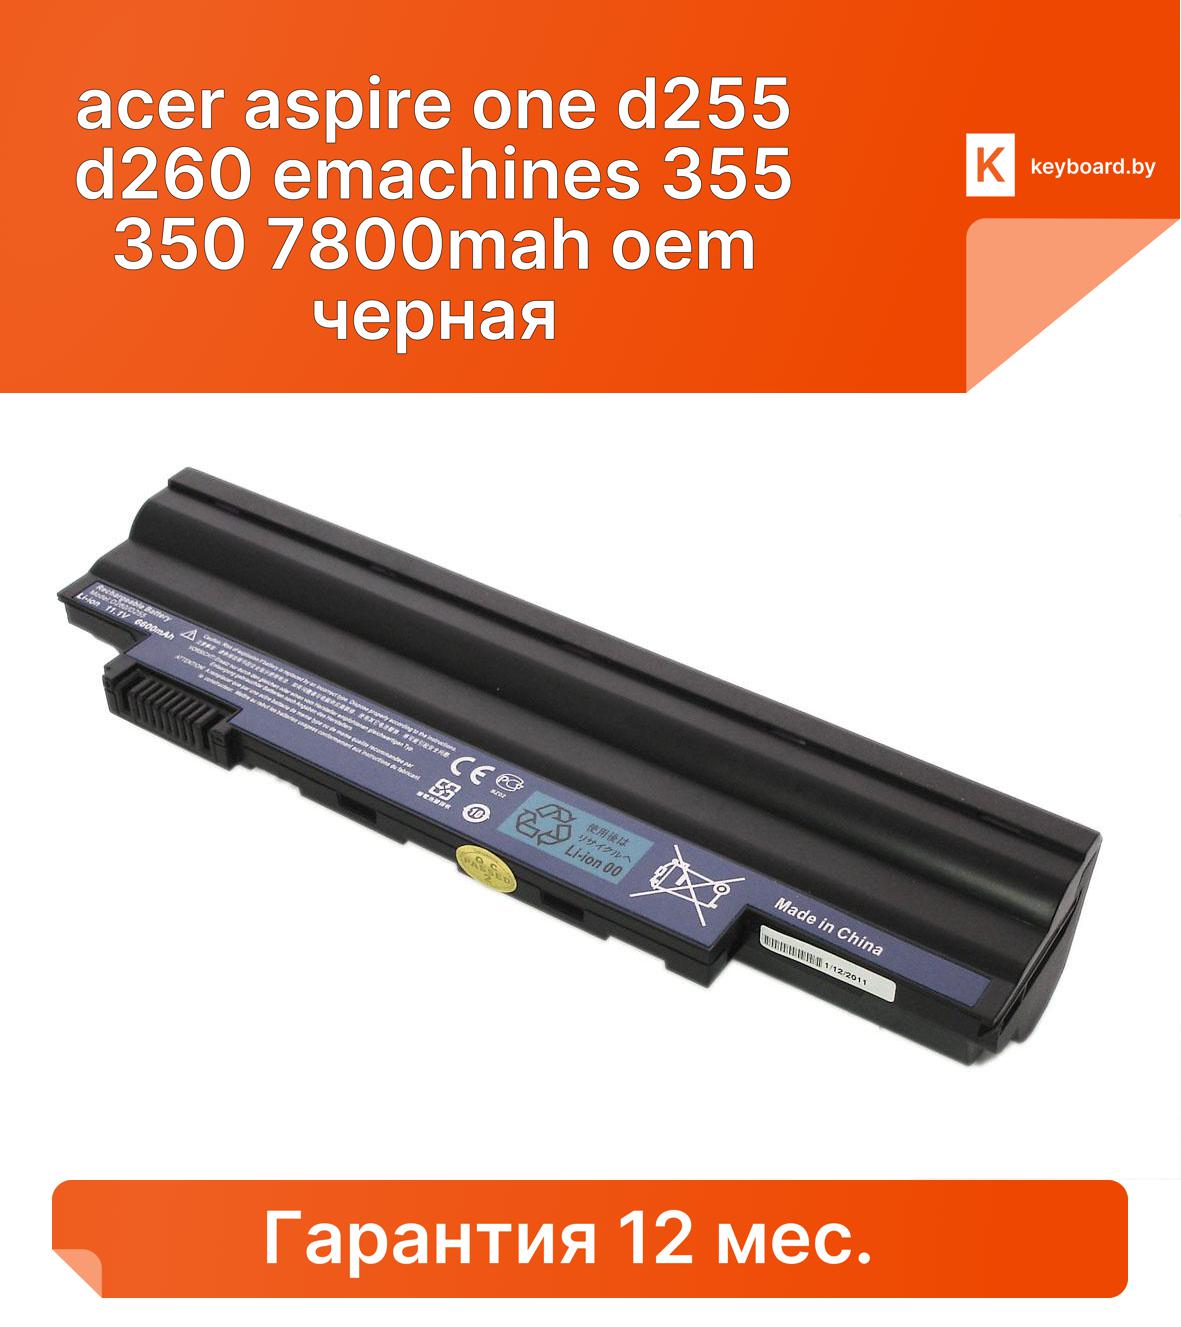 Аккумуляторная батарея для ноутбука acer aspire one d255 d260 emachines 355 350 7800mah oem черная